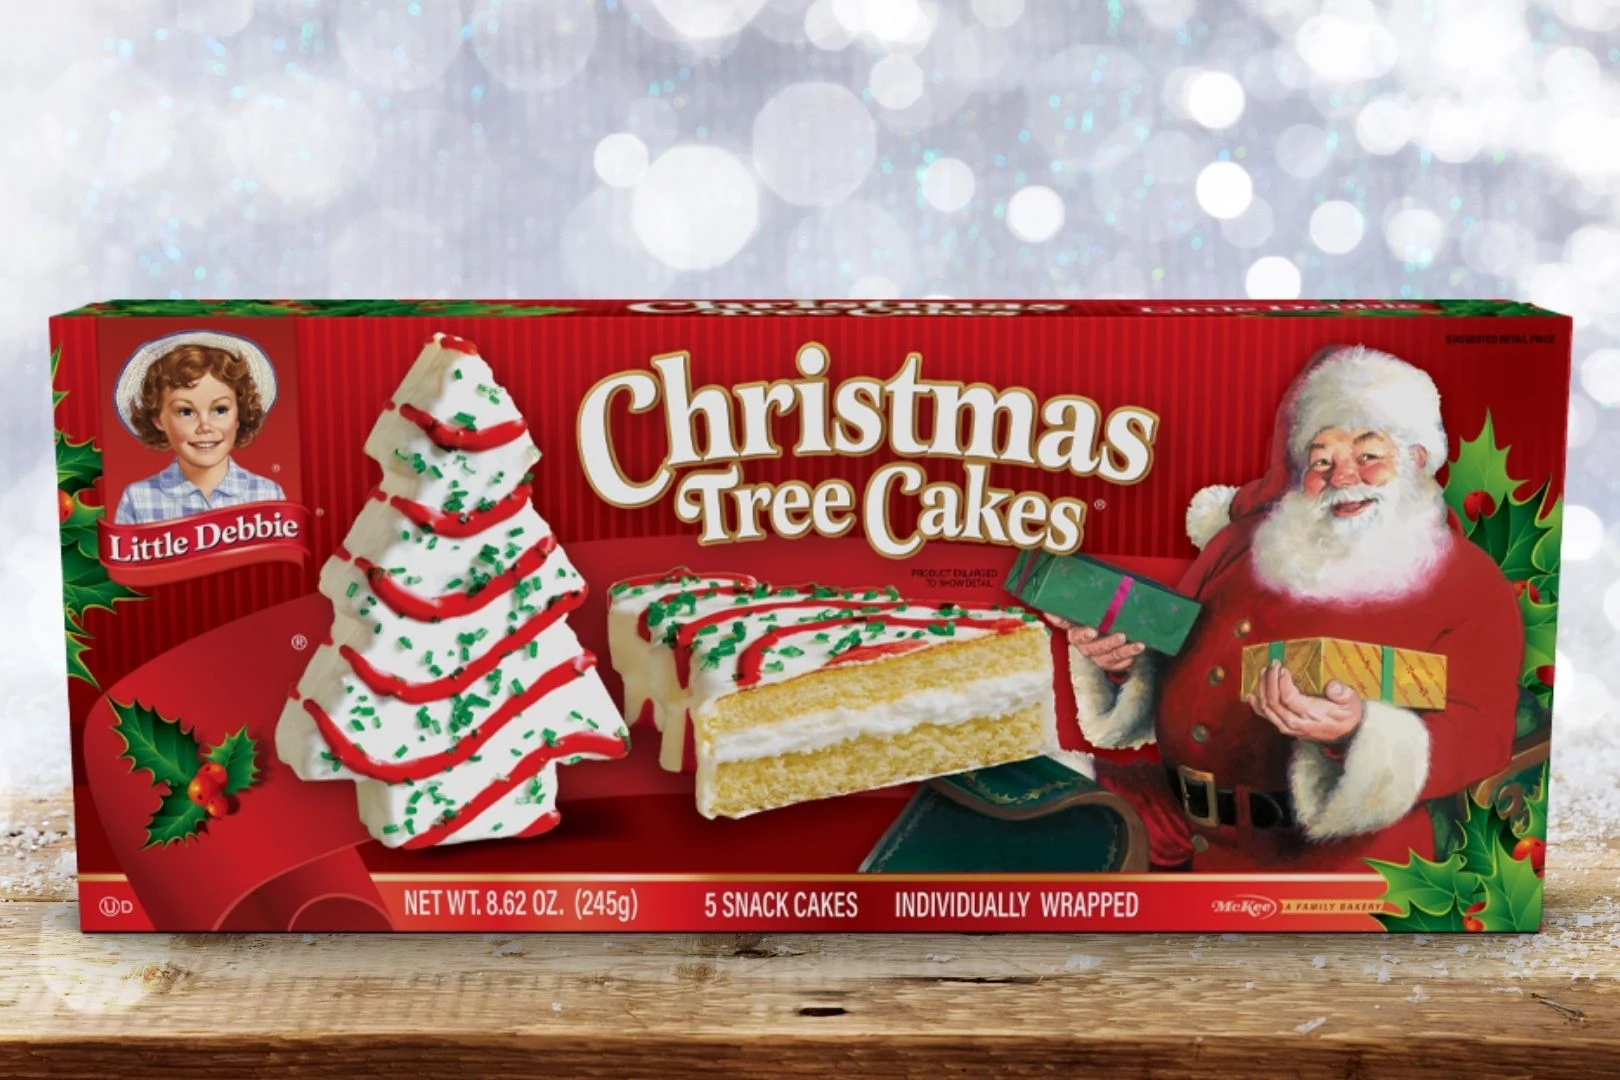 https://townsquare.media/site/71/files/2020/10/Little-Debbie-Christmas-Tree-Cake.jpg